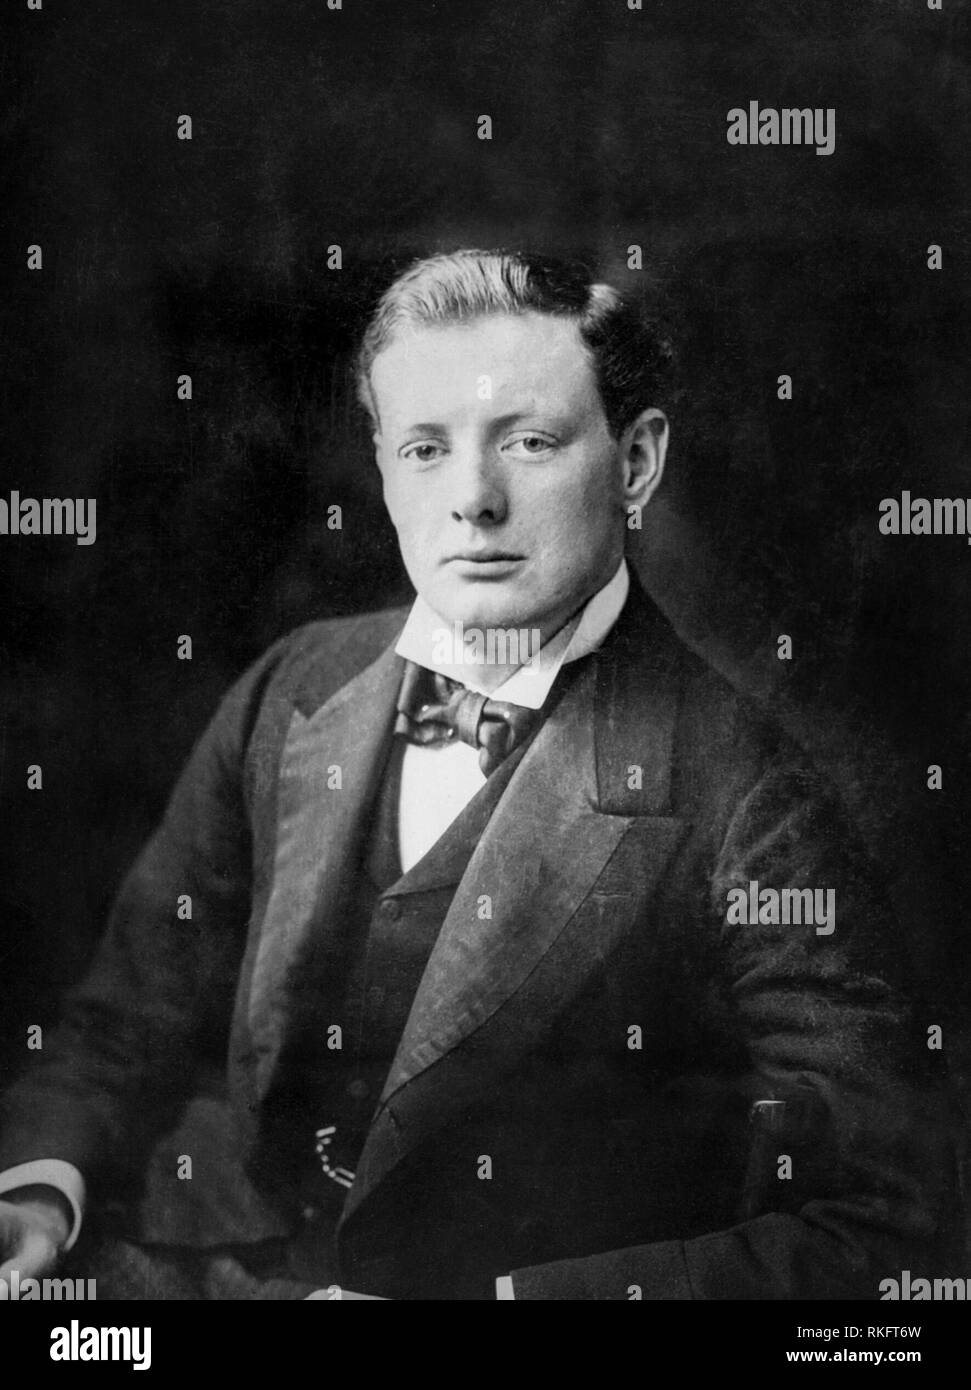 Portrait de Winston Churchill en 1900 en tant qu'homme politique à la Chambre basse du Parlement comme un jeune homme Banque D'Images